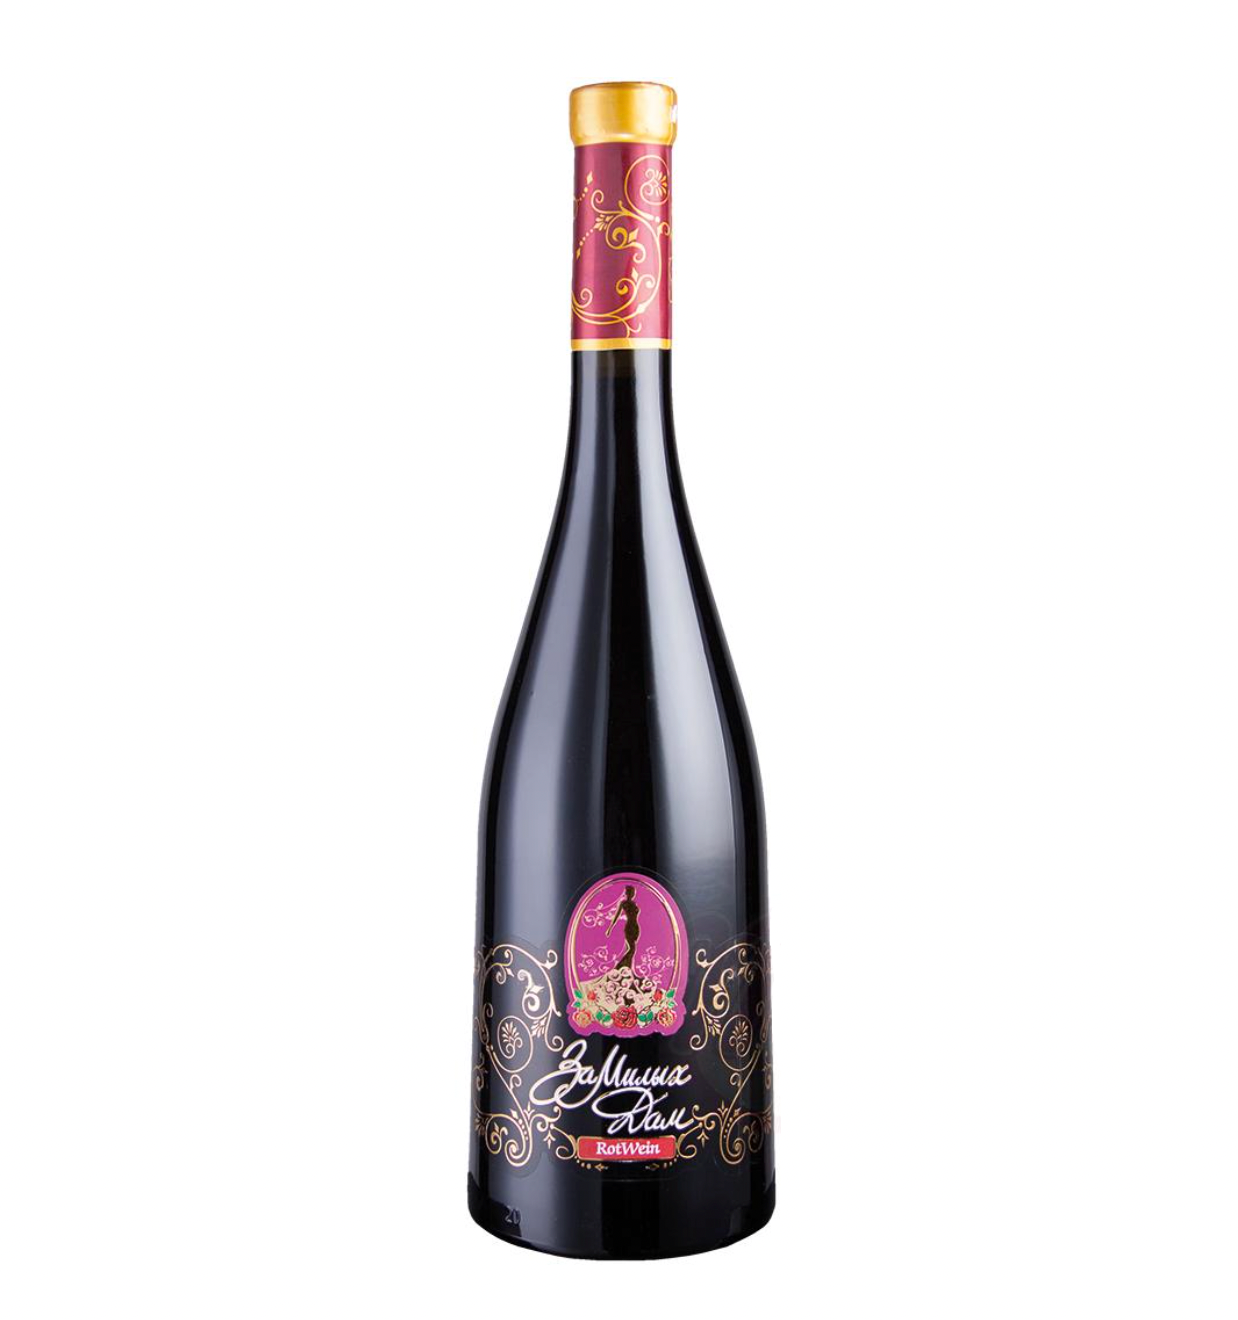 Rode wijn "For Lovely Ladies" zoet 13% alc. 750ml.